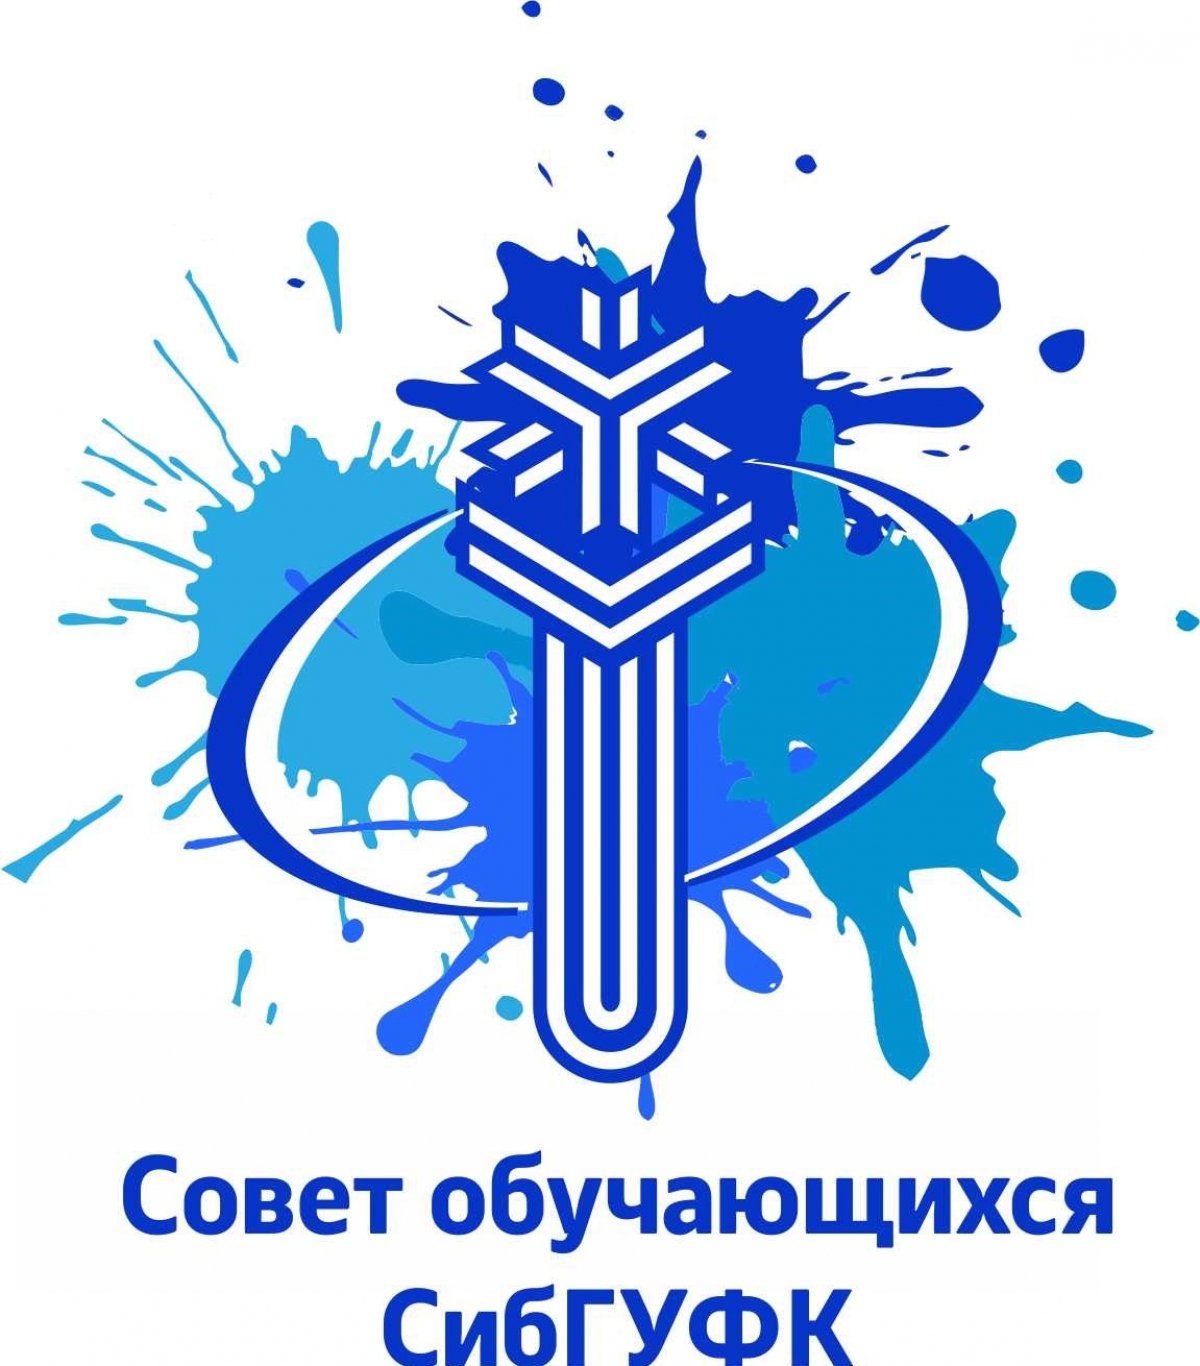 👇🏻Все вступаем в новую группу Совета обучающихся СибГУФК 👇🏻